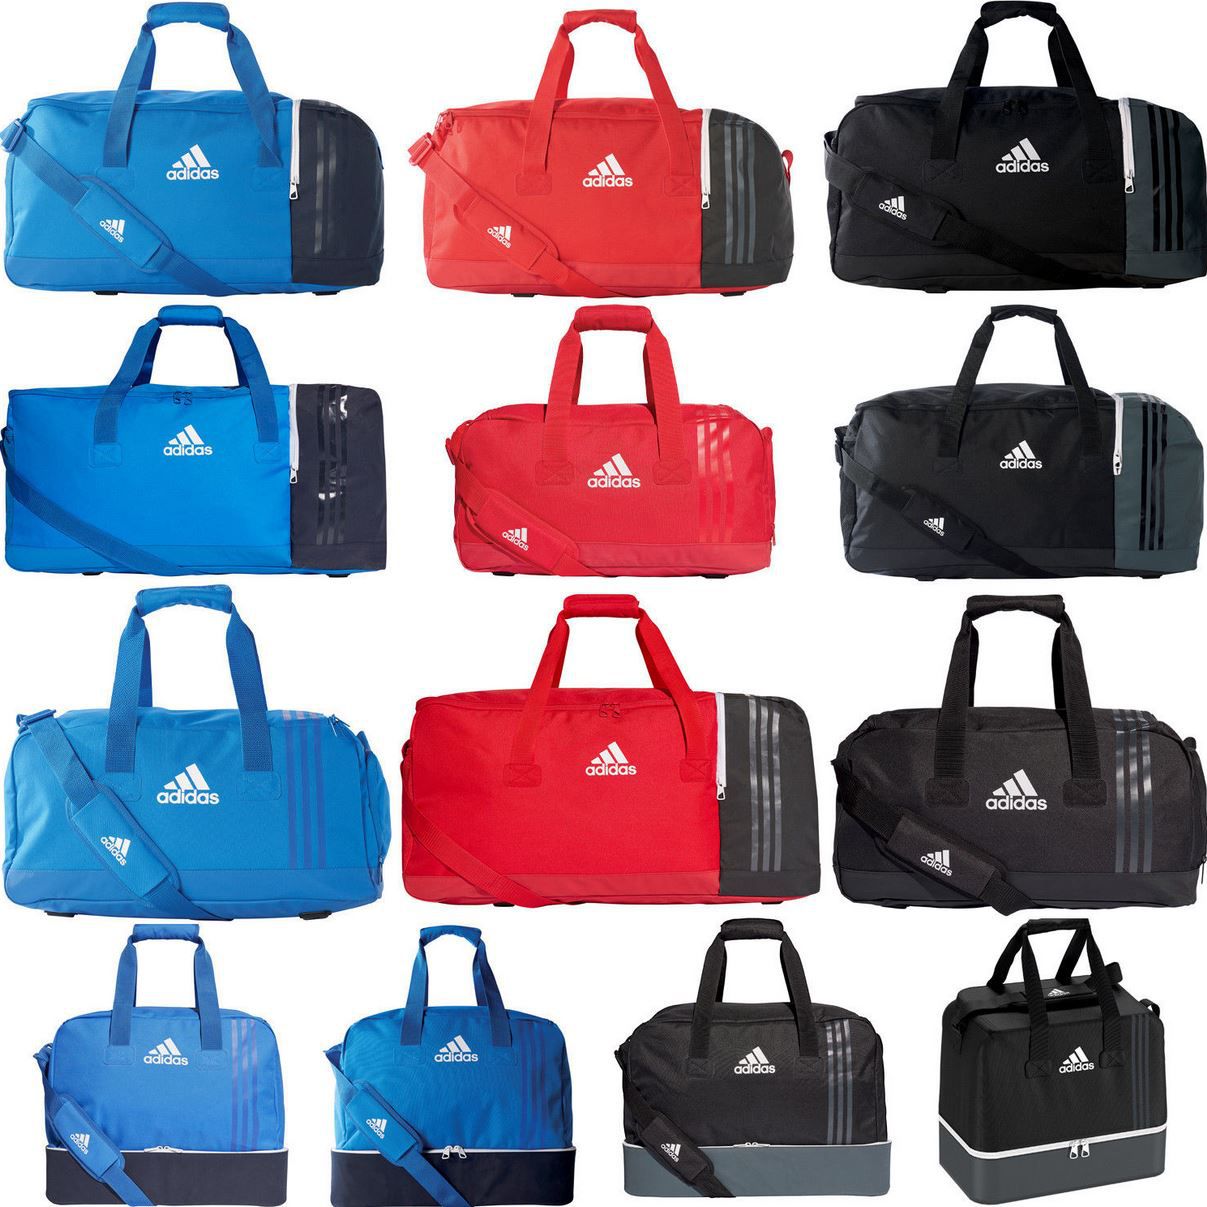 adidas Tiro Teambag Sporttaschen mit Boden  u. Schuhfach für 19,95€ (statt 29€)